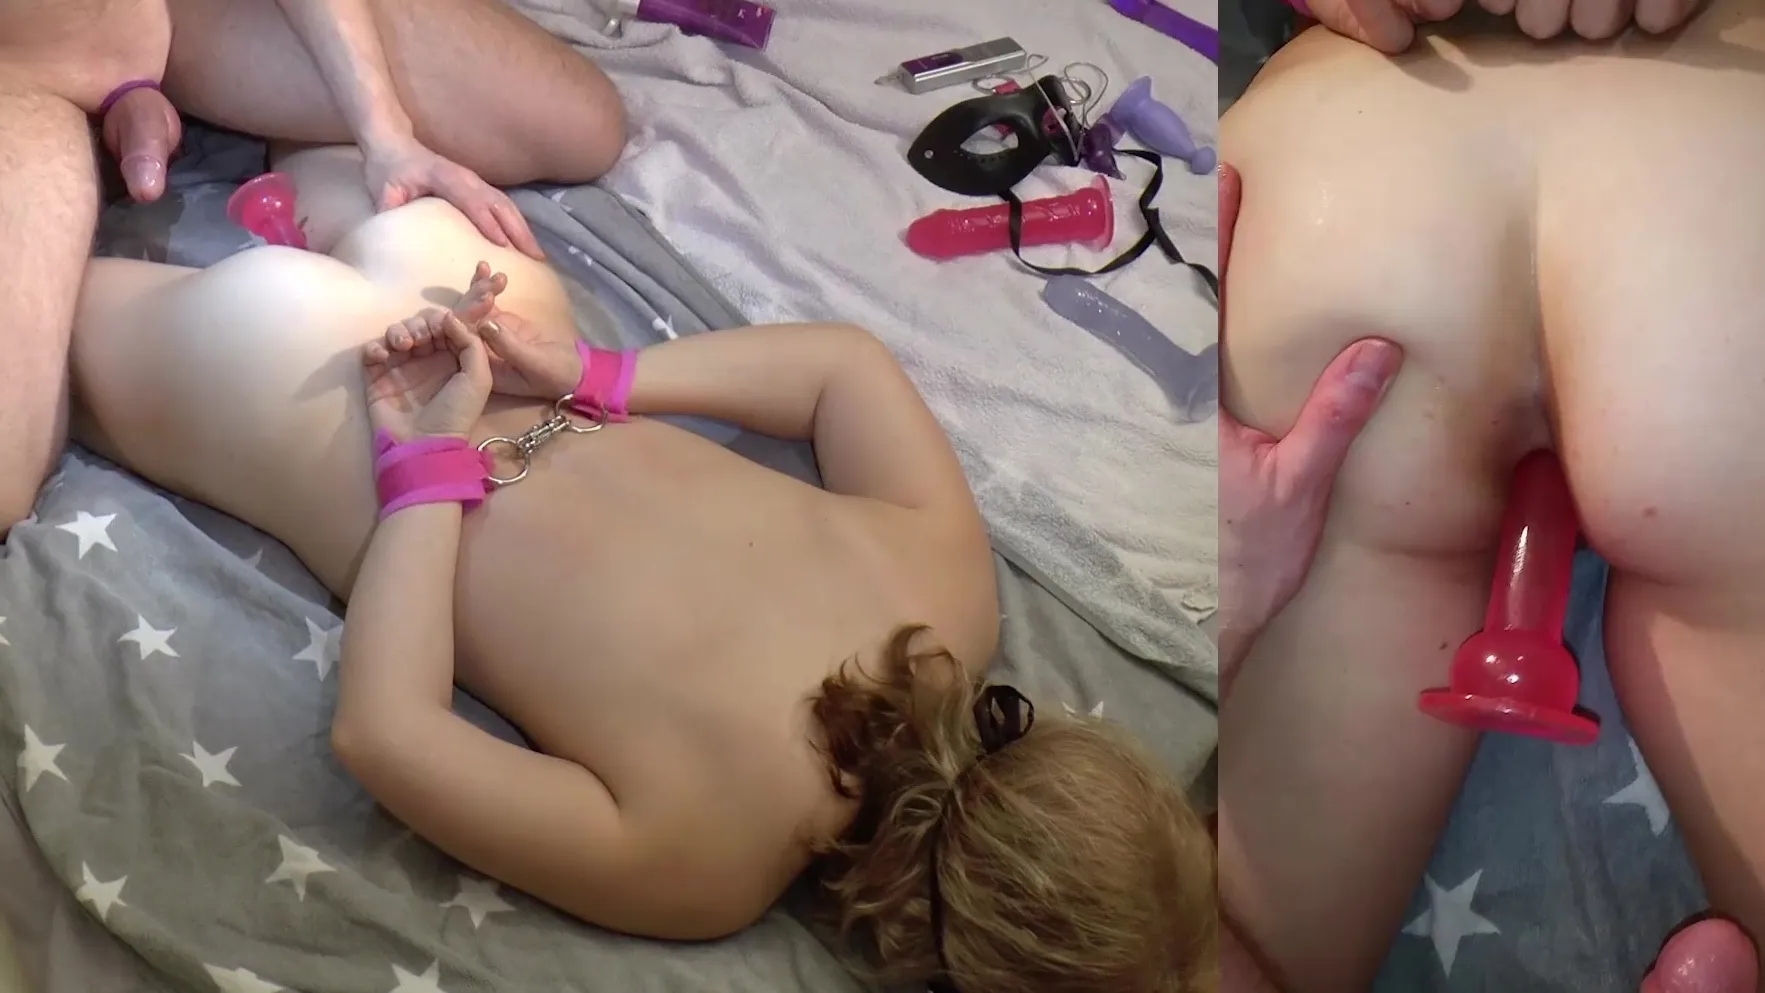 Amateursex auf dem Bett mit Handschellen, Spielzeug und einem fetten Schwanz Foto